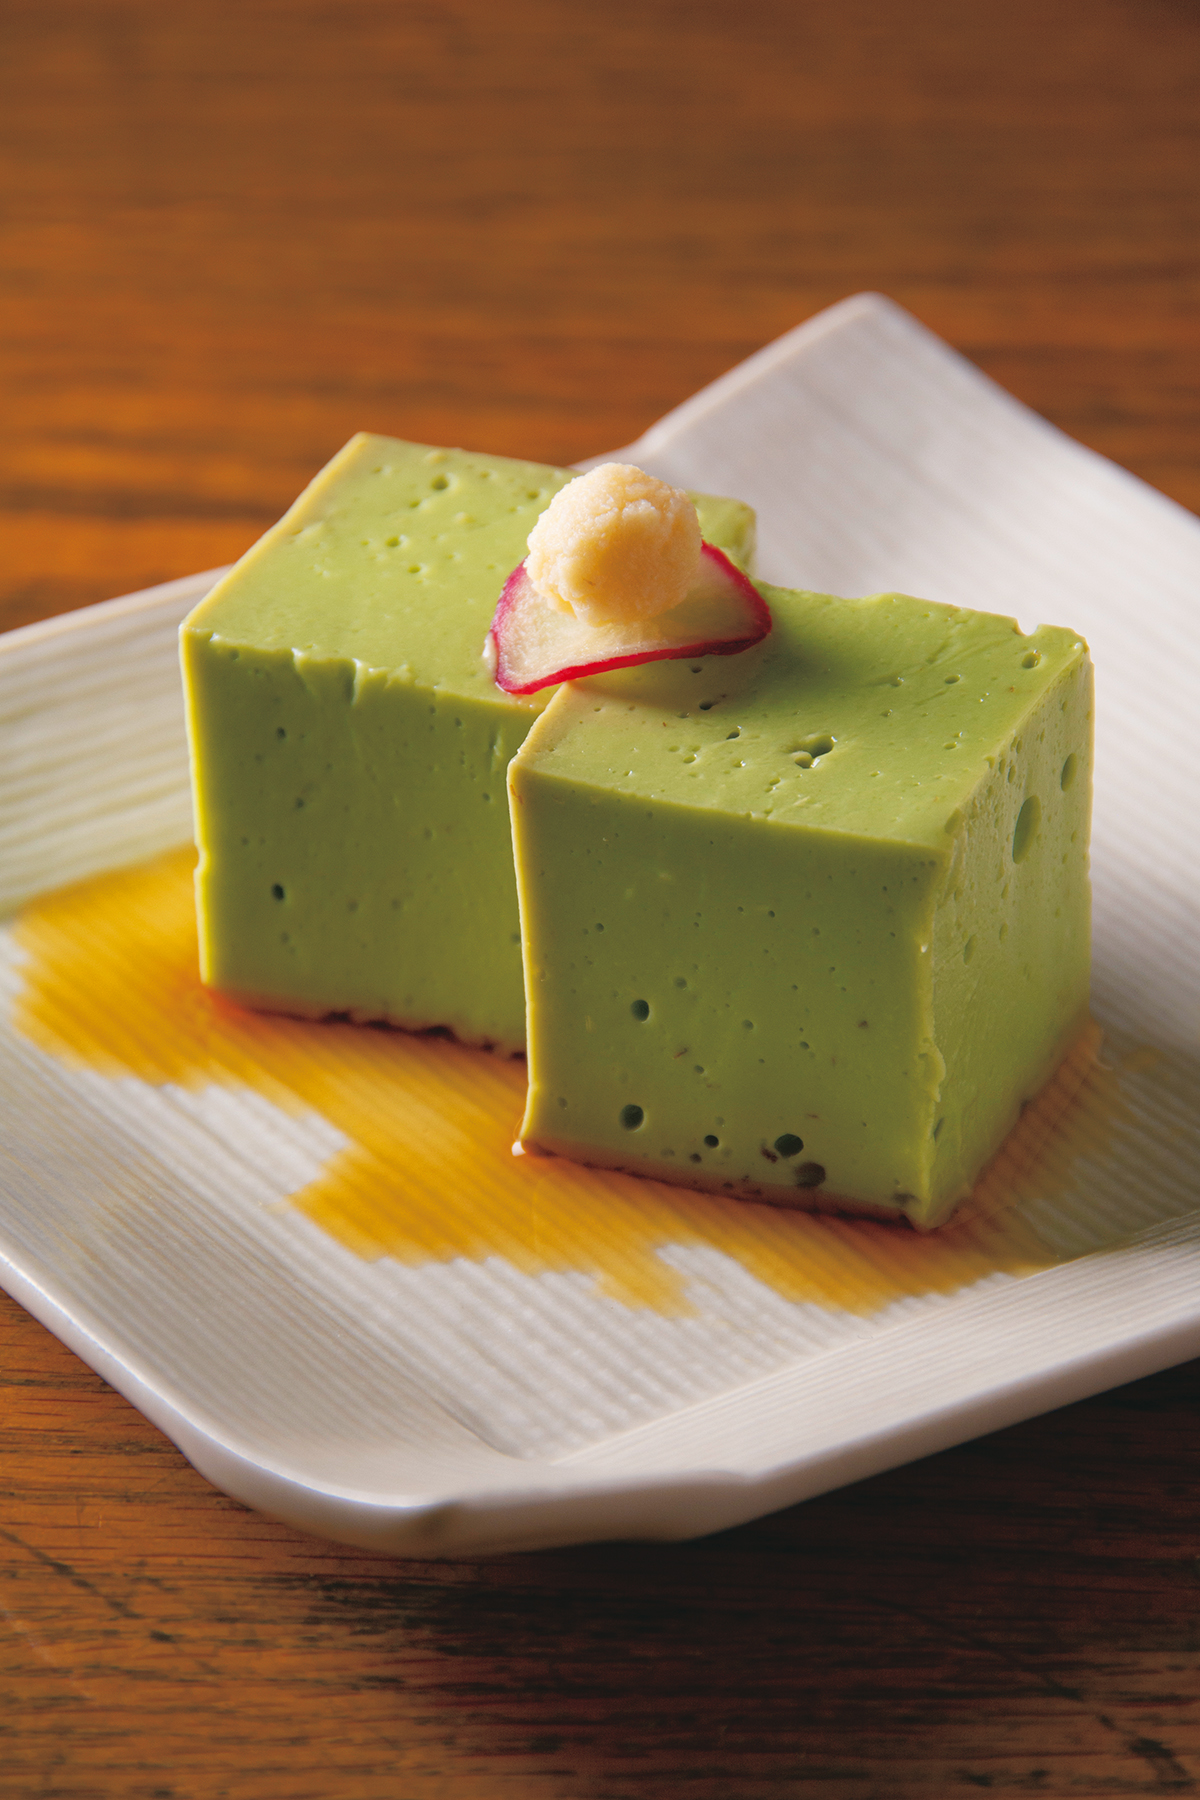 アボカド豆腐 500円<br />
アボカドと豆腐の風味がバランスよく両立。そのなめらかな舌触りにも感動